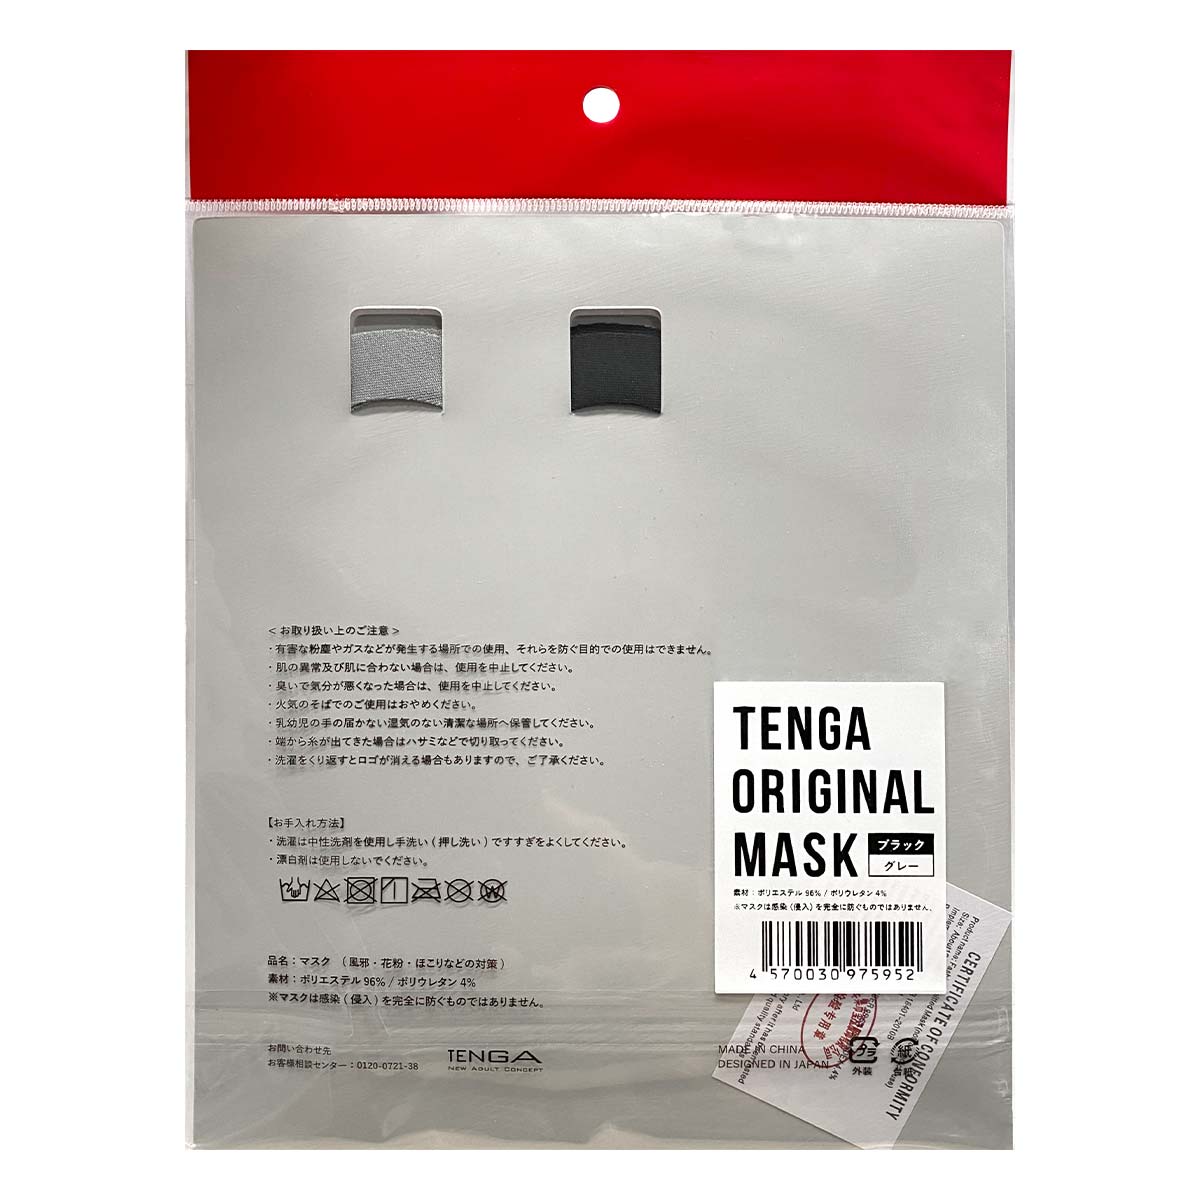 TENGA Original Mask (Reusable)-p_3